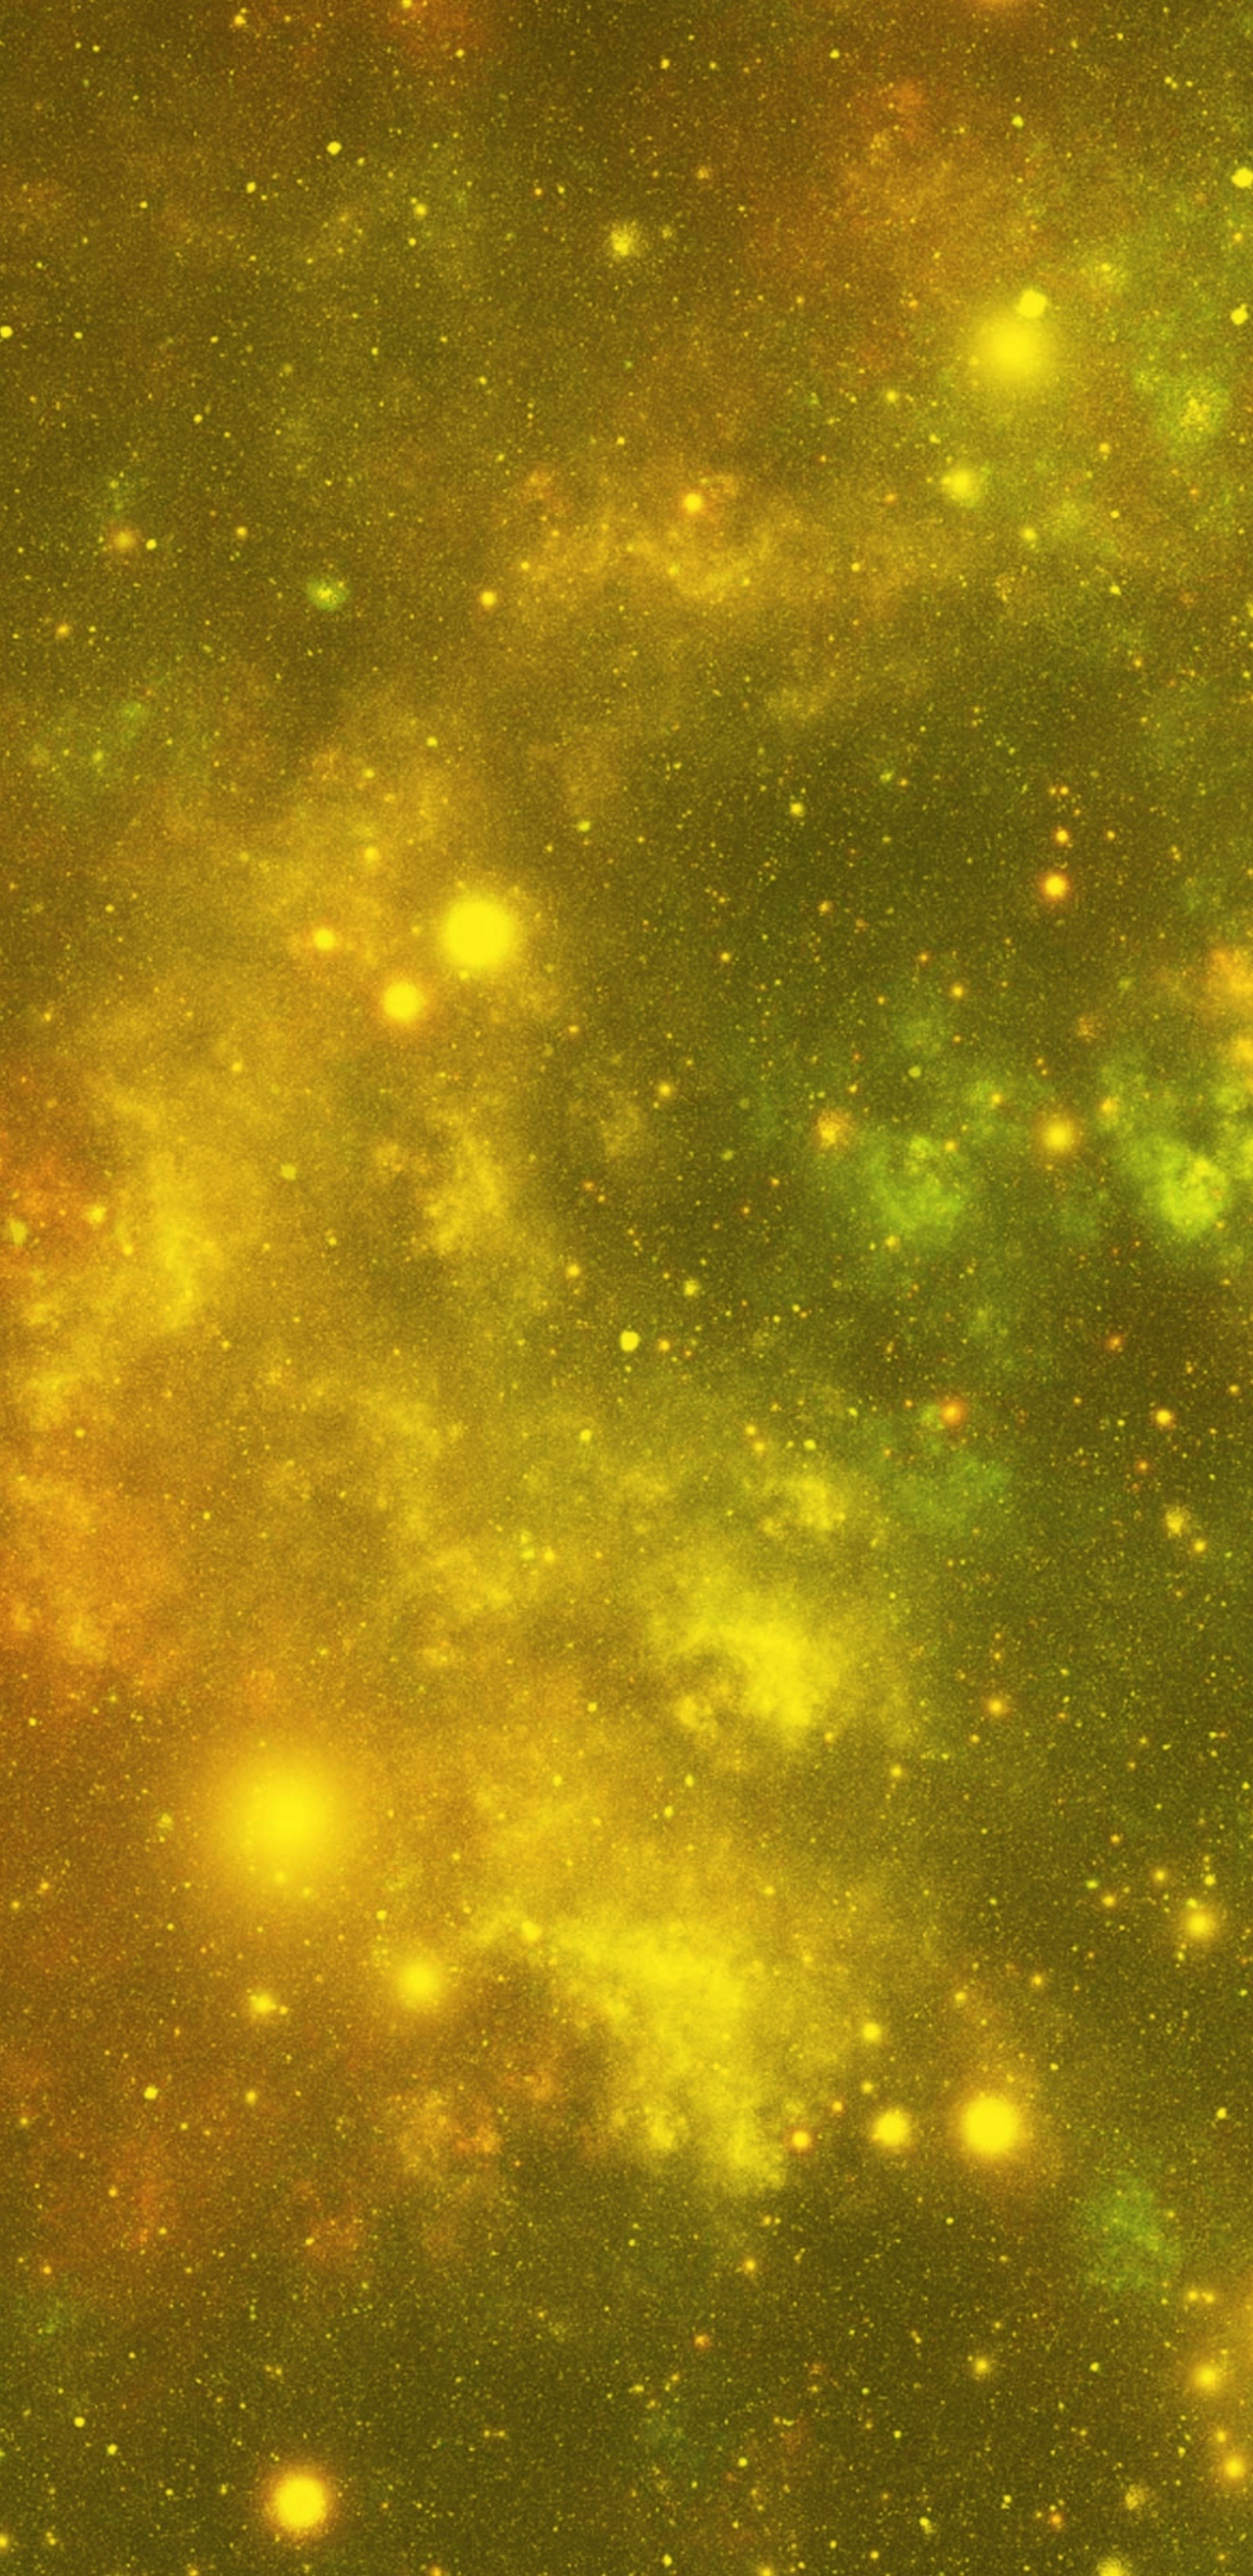 Estrellas Verdes y Amarillas en el Cielo. Wallpaper in 1440x2960 Resolution